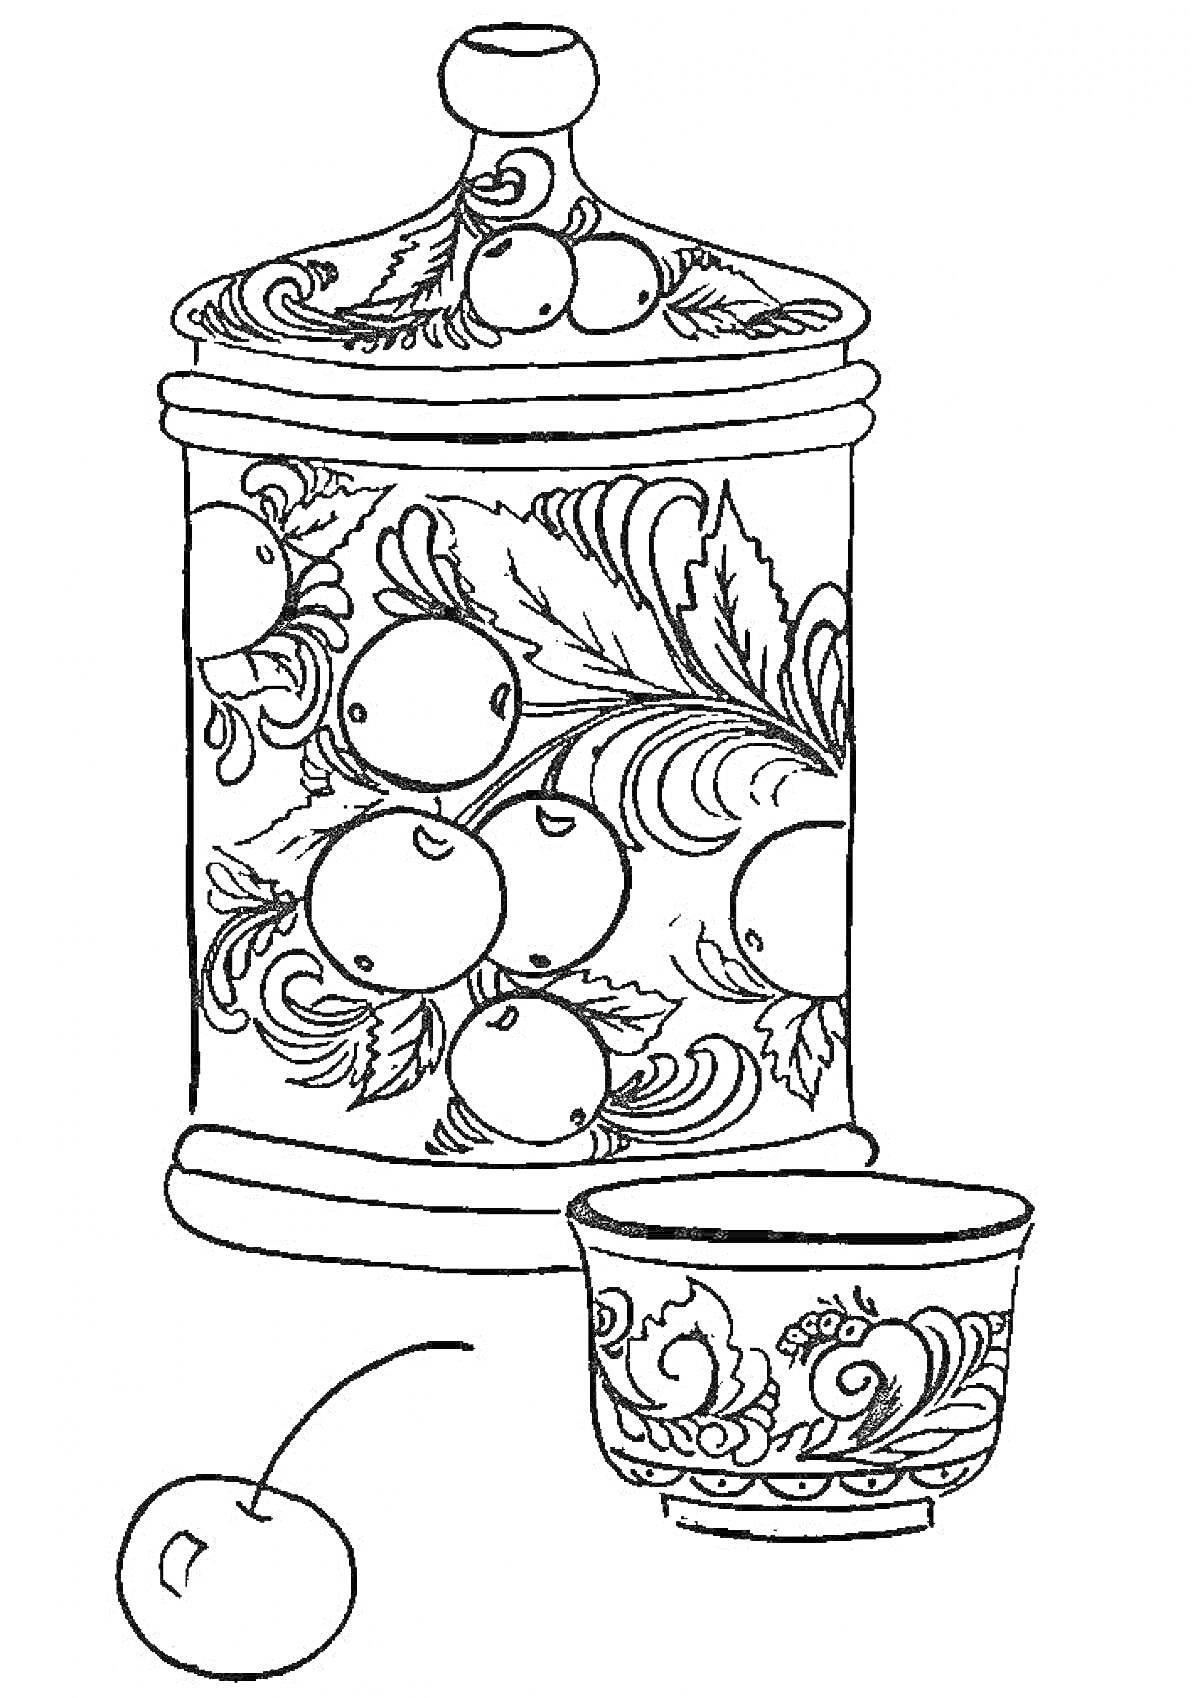 баночка с крышкой и рисунком в виде листьев и ягод, чашка с аналогичным рисунком, отдельная ягода